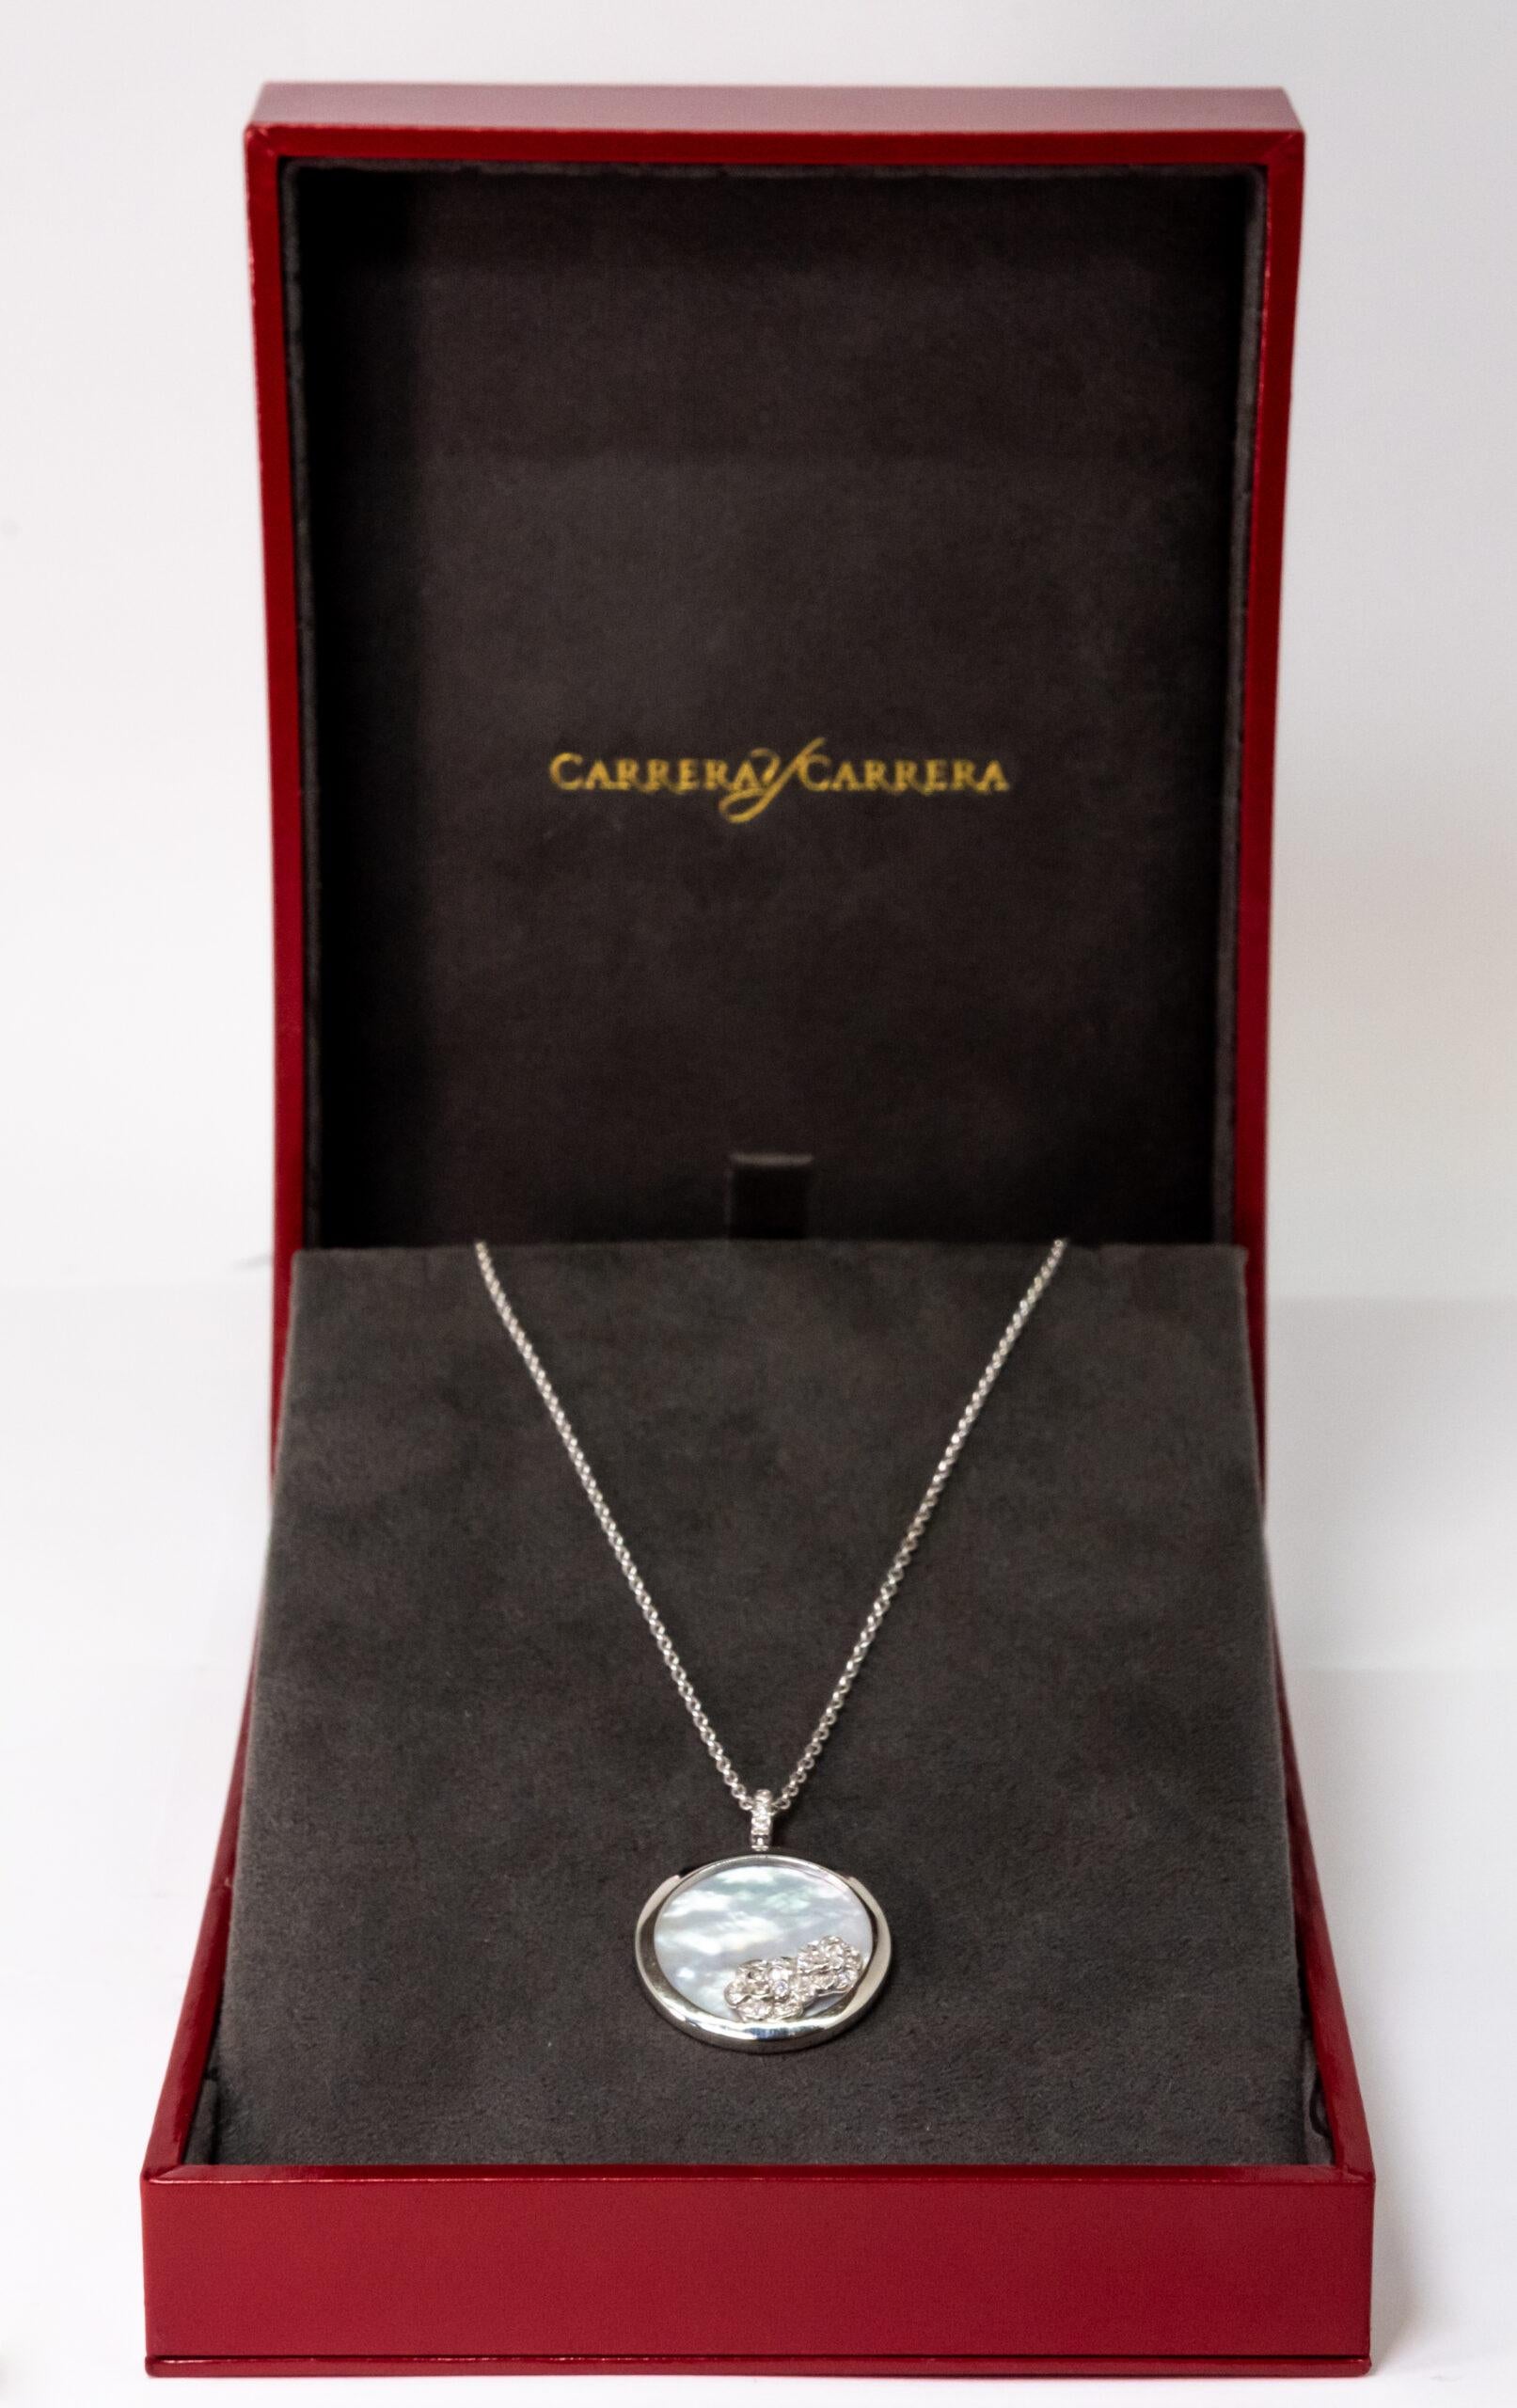 Carrara Y Carrara Baile Garden 18k White Gold and Diamonds Pendant, 10076434 For Sale 2